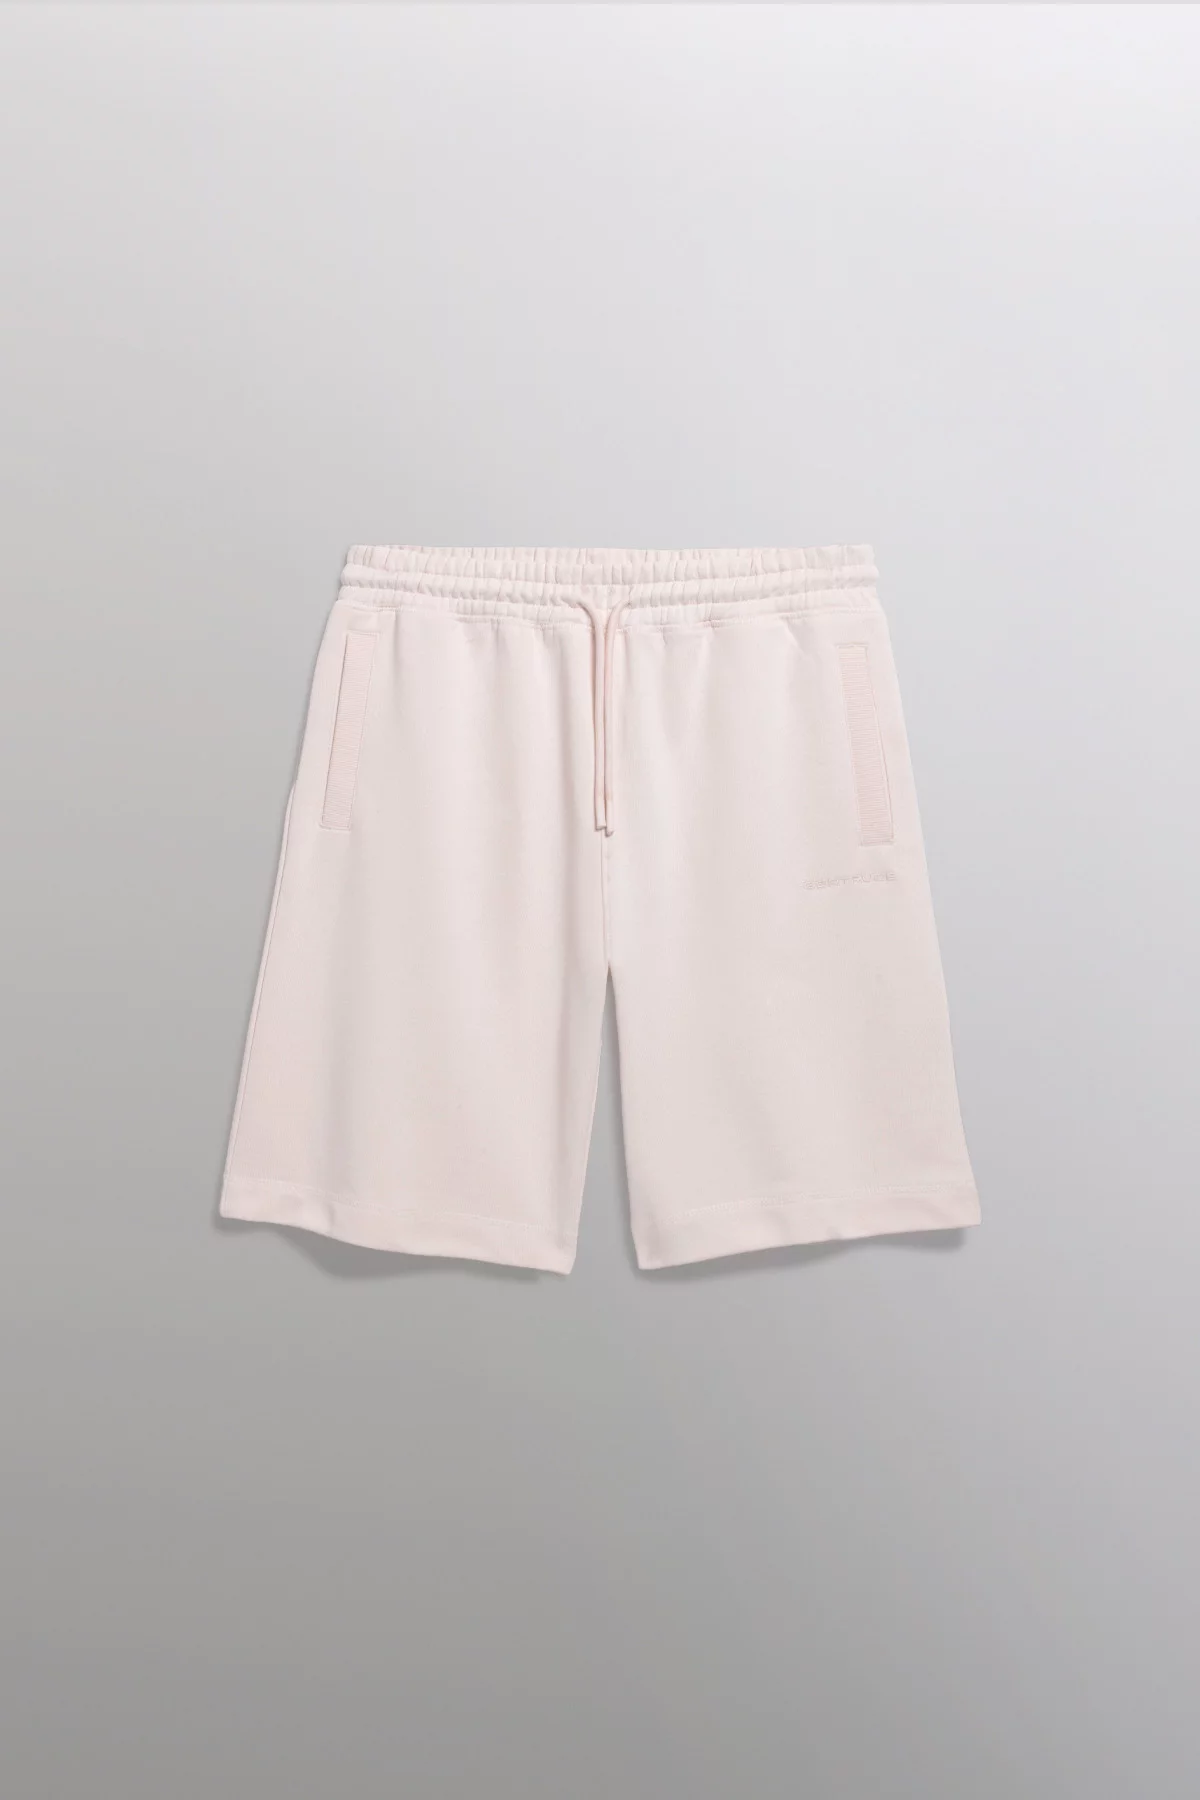 Yann cotton fleece shorts